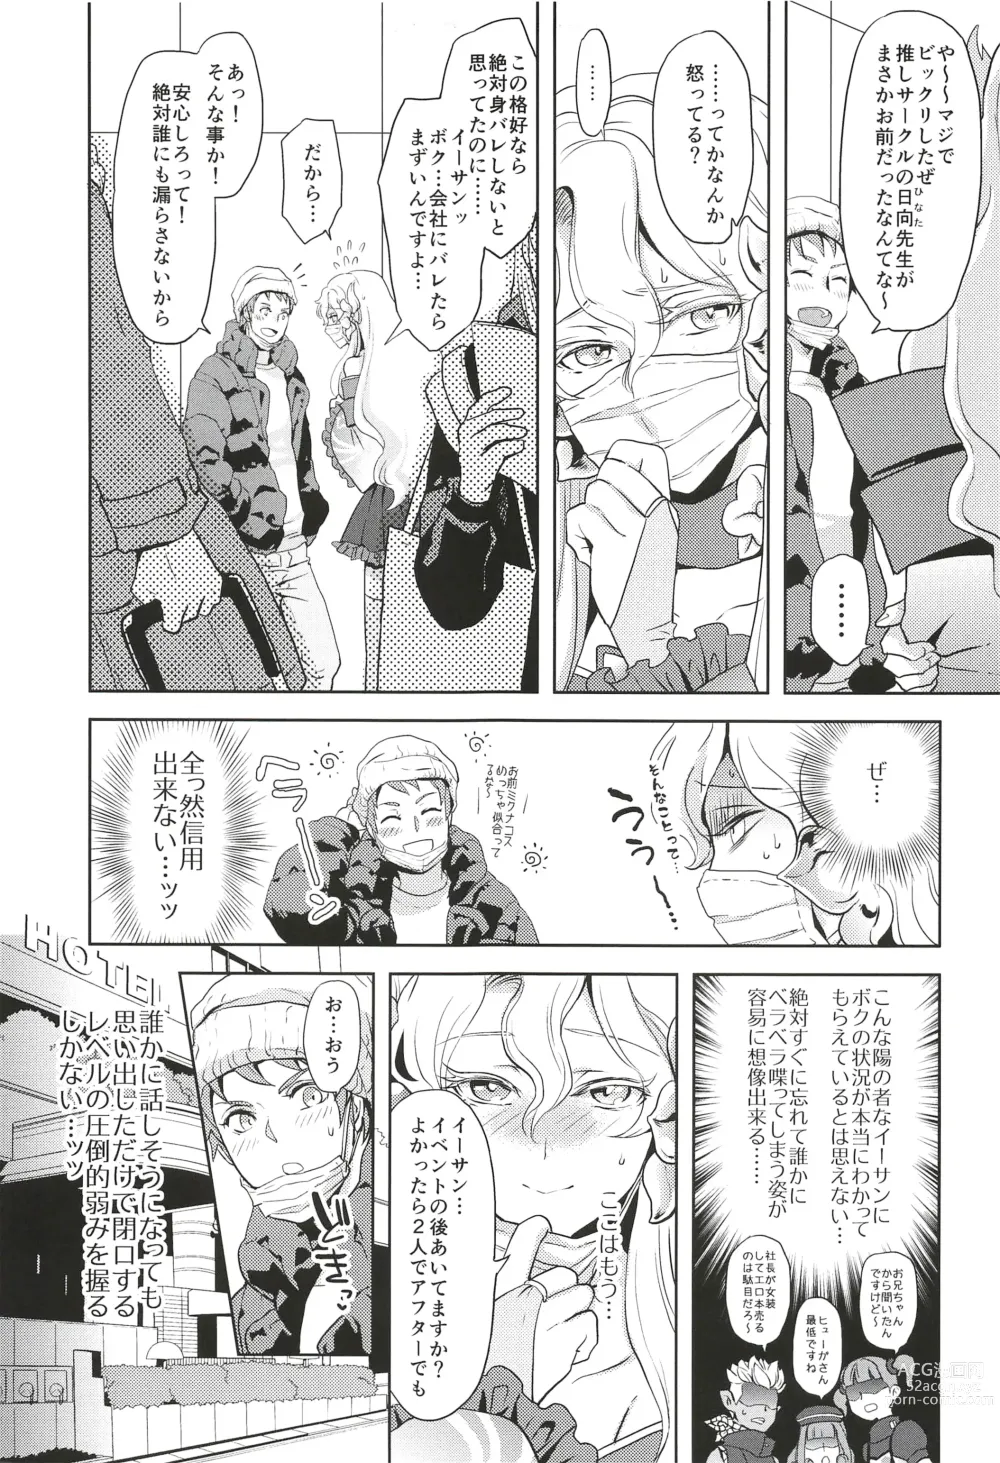 Page 7 of doujinshi Kore de Himitsu ni Shitekuremasuka